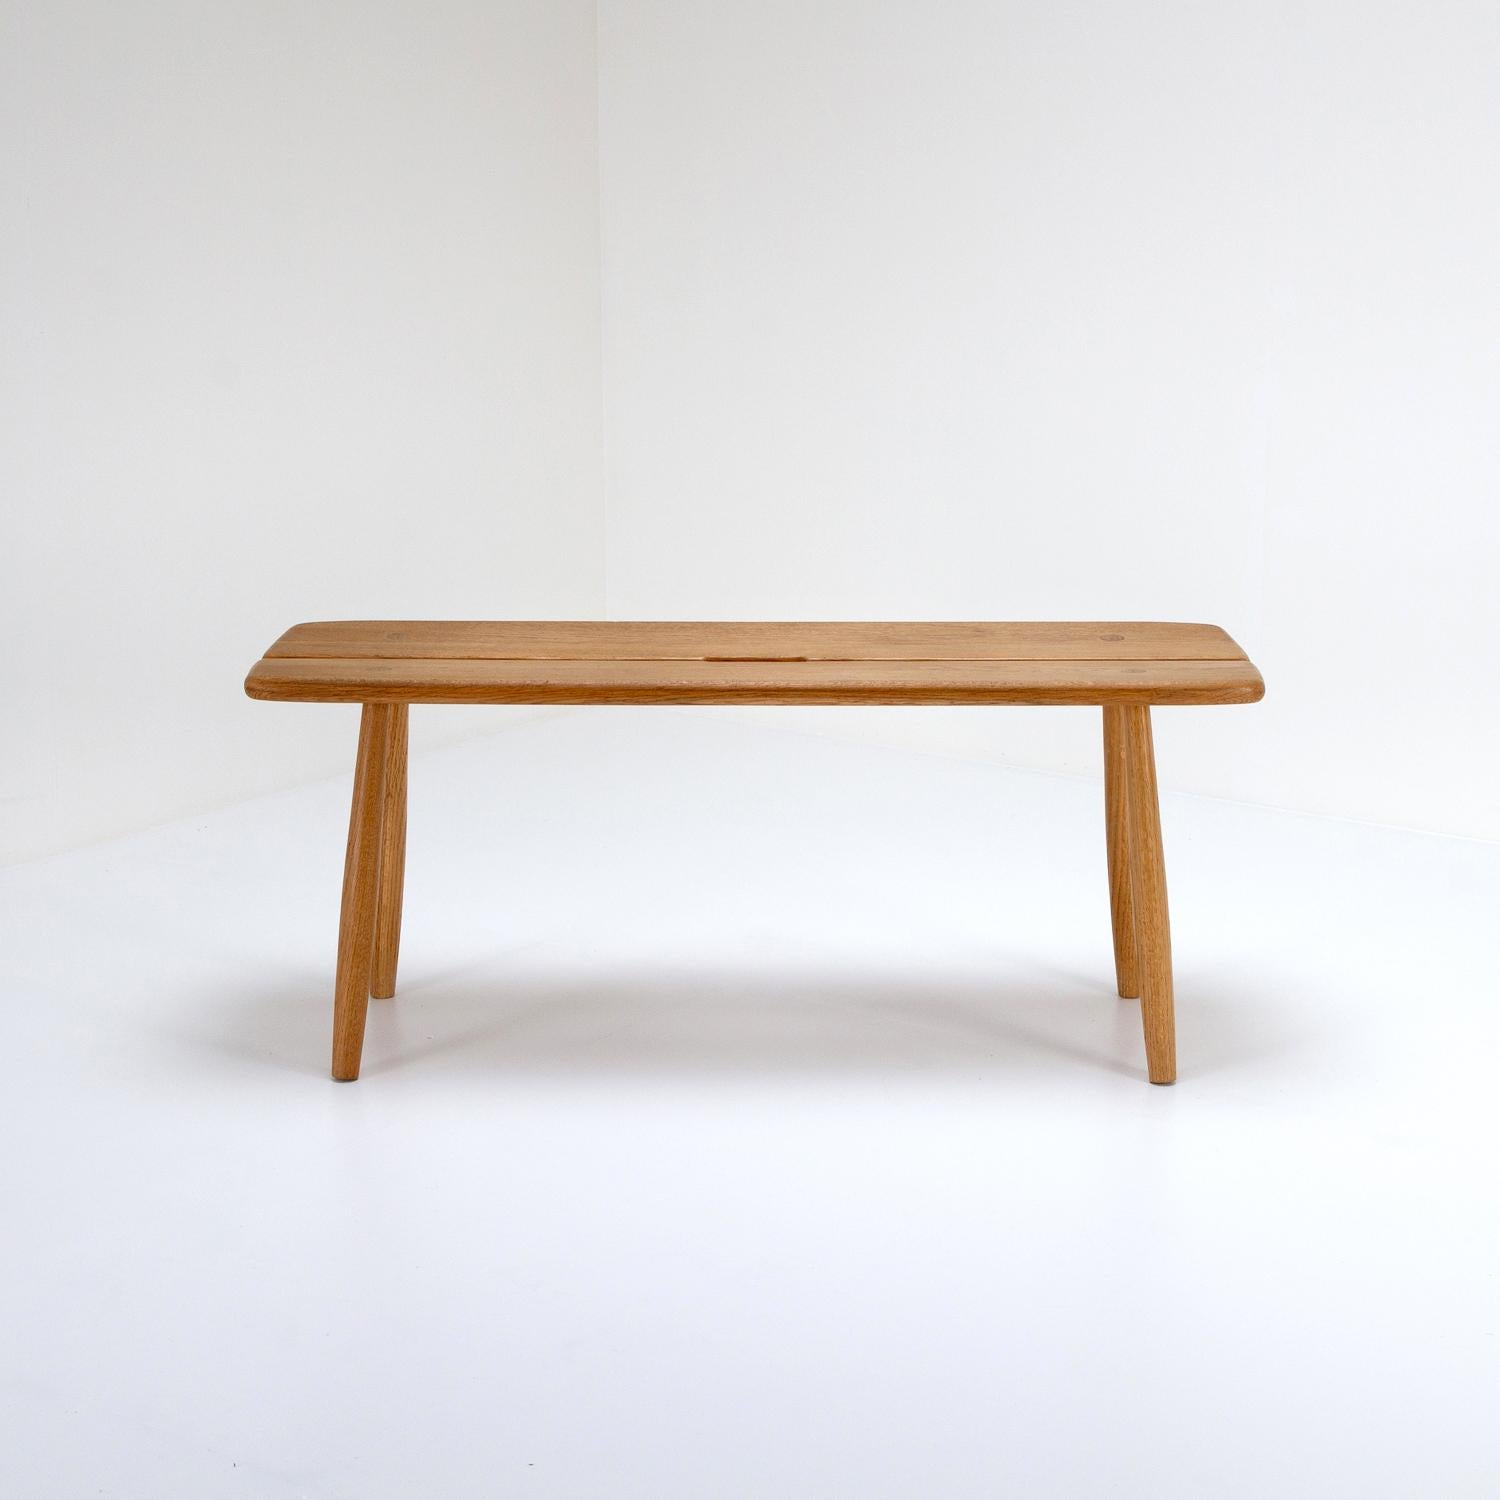 A mid century solid oak bench designed by Carl Gustaf Boulogner for AB Bröderna Wigells Stolfabrik, Sweden, 1950s.